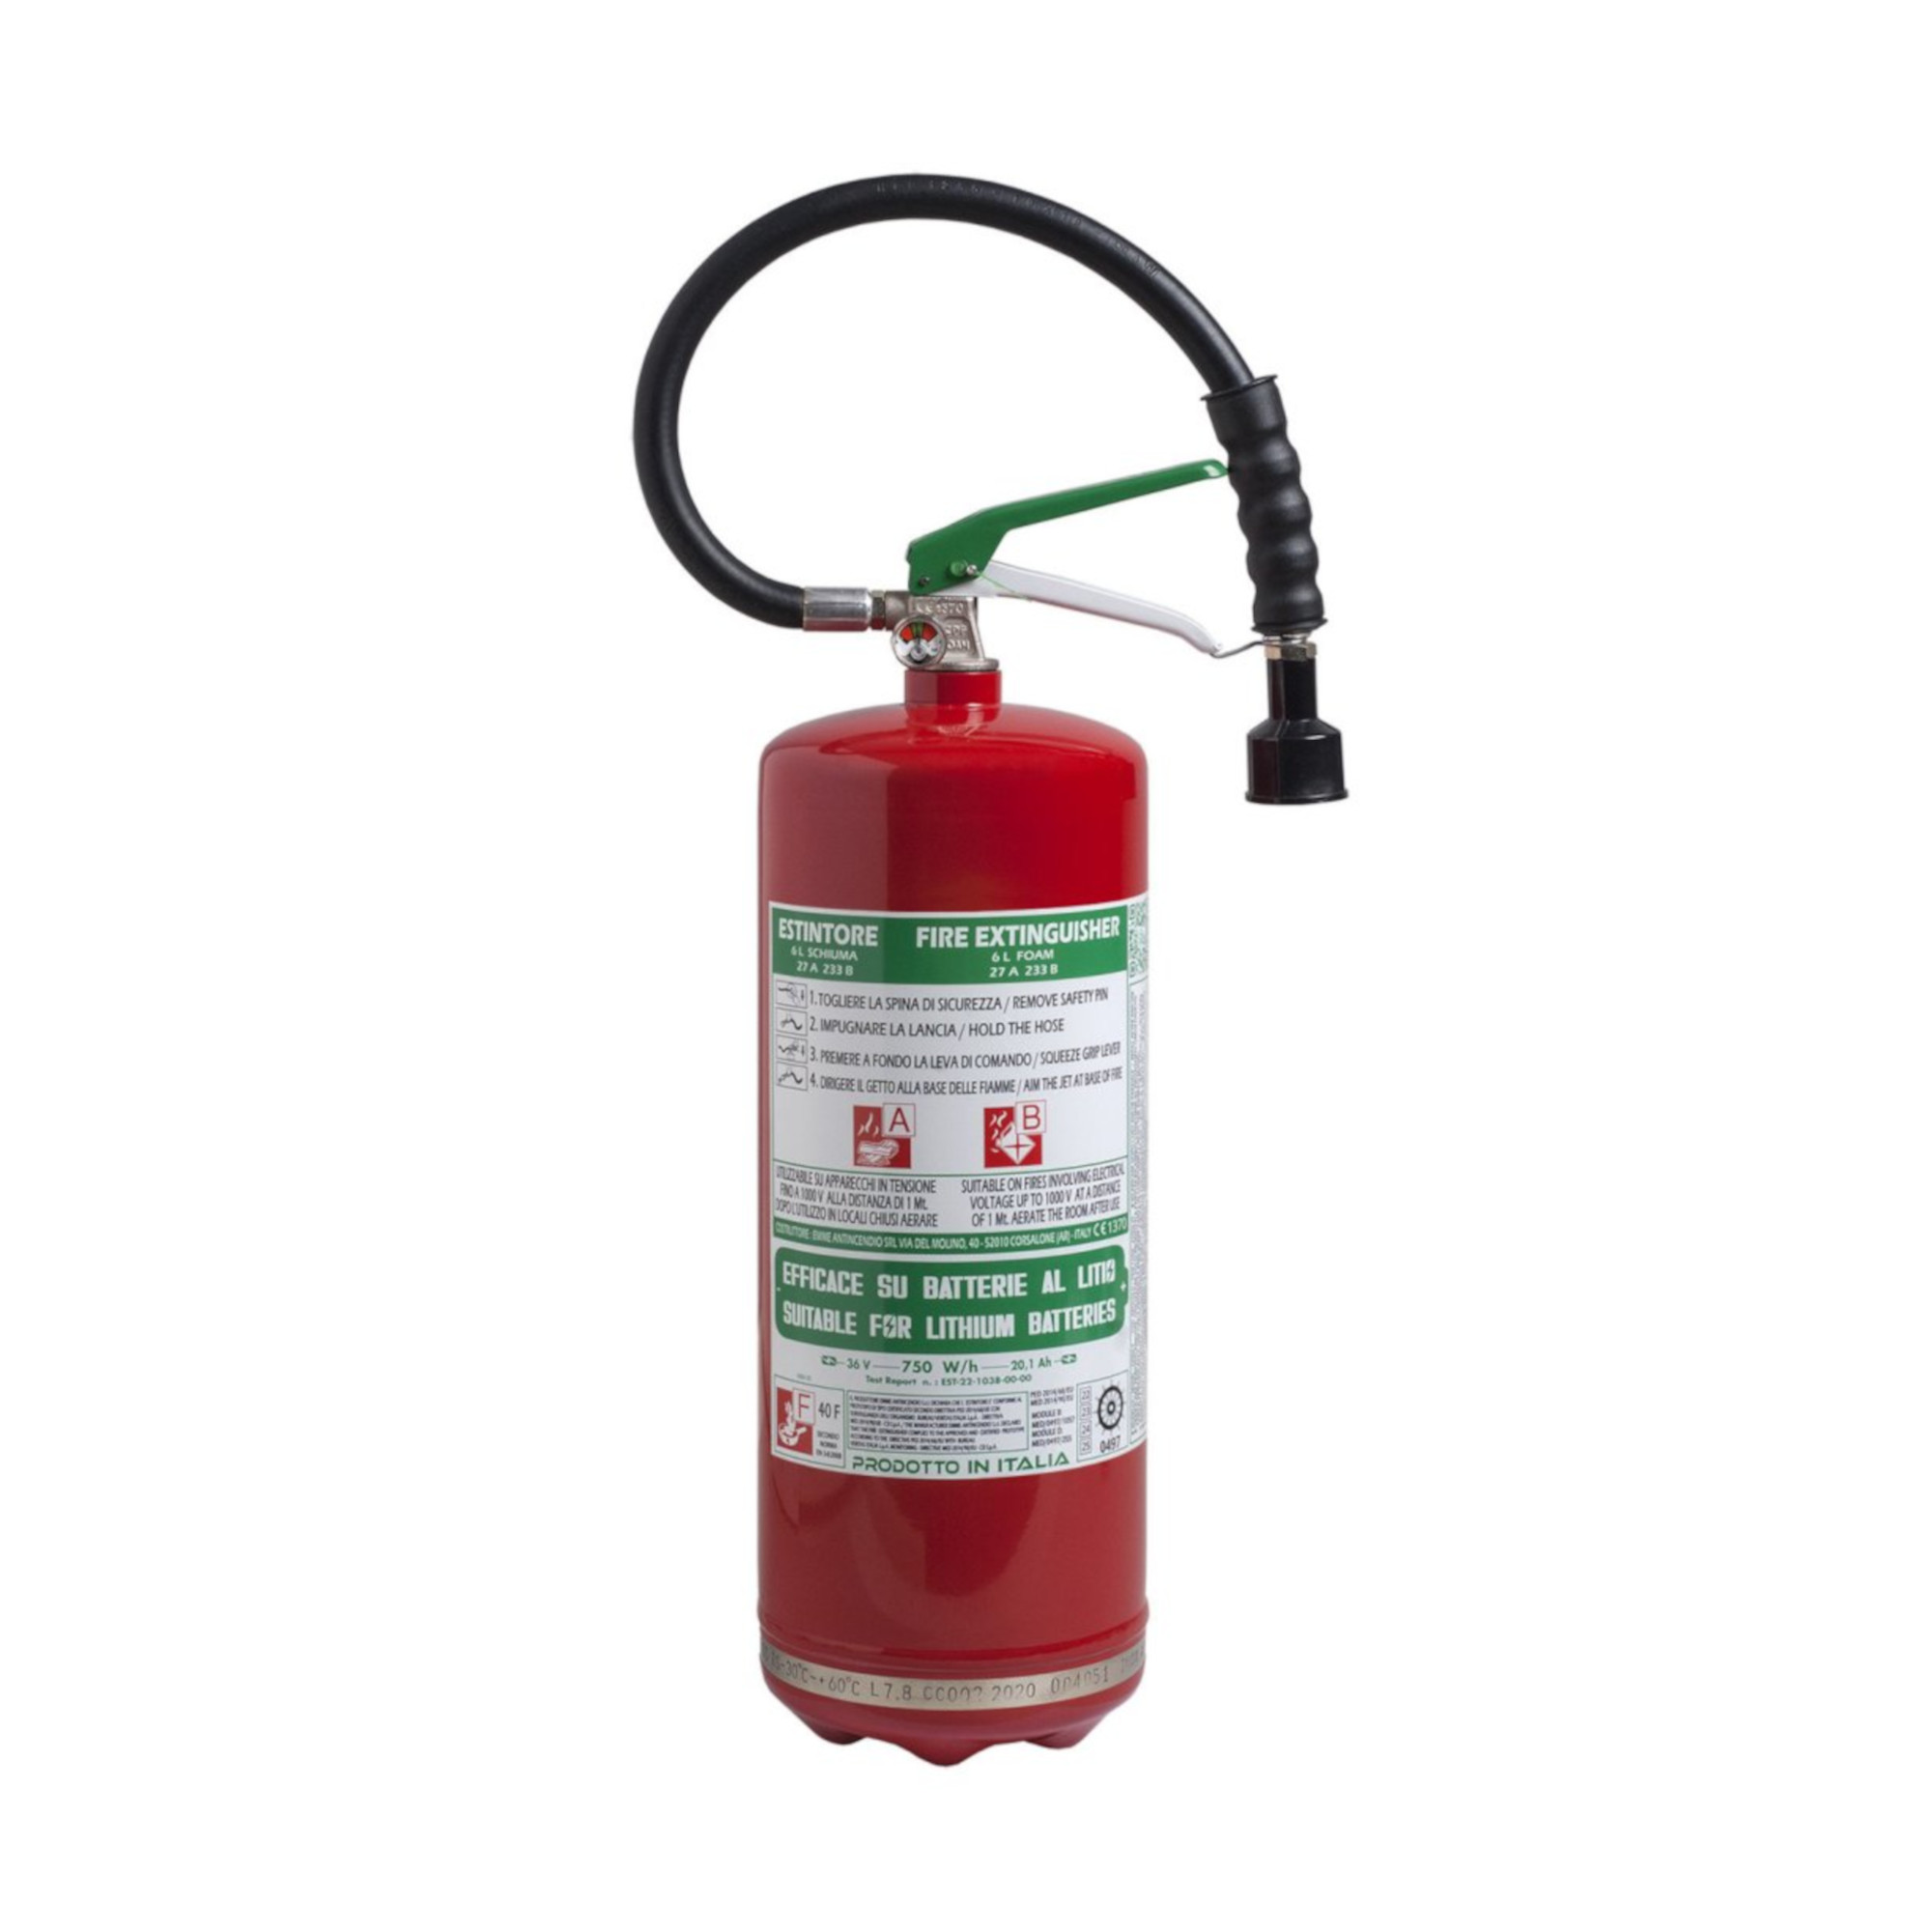 Feuerlöscher Schaum DOLOMITI lt 6 Inoxbehälter - 27A 233B (geeignet für Litium Batterien)